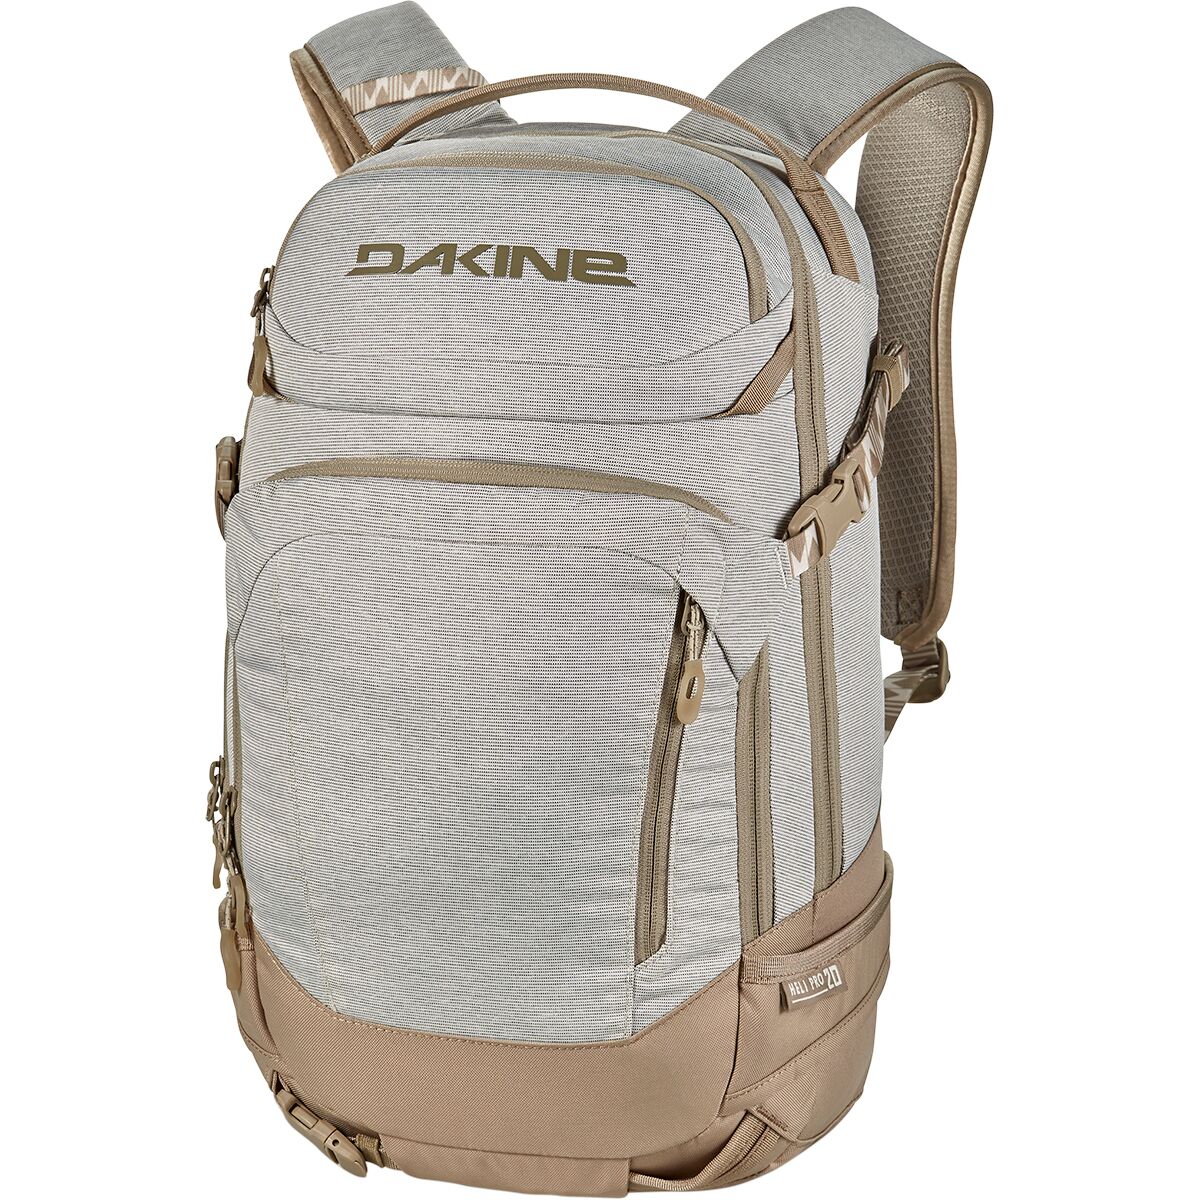 DAKINE Heli Pro 20L Backpack - Women's